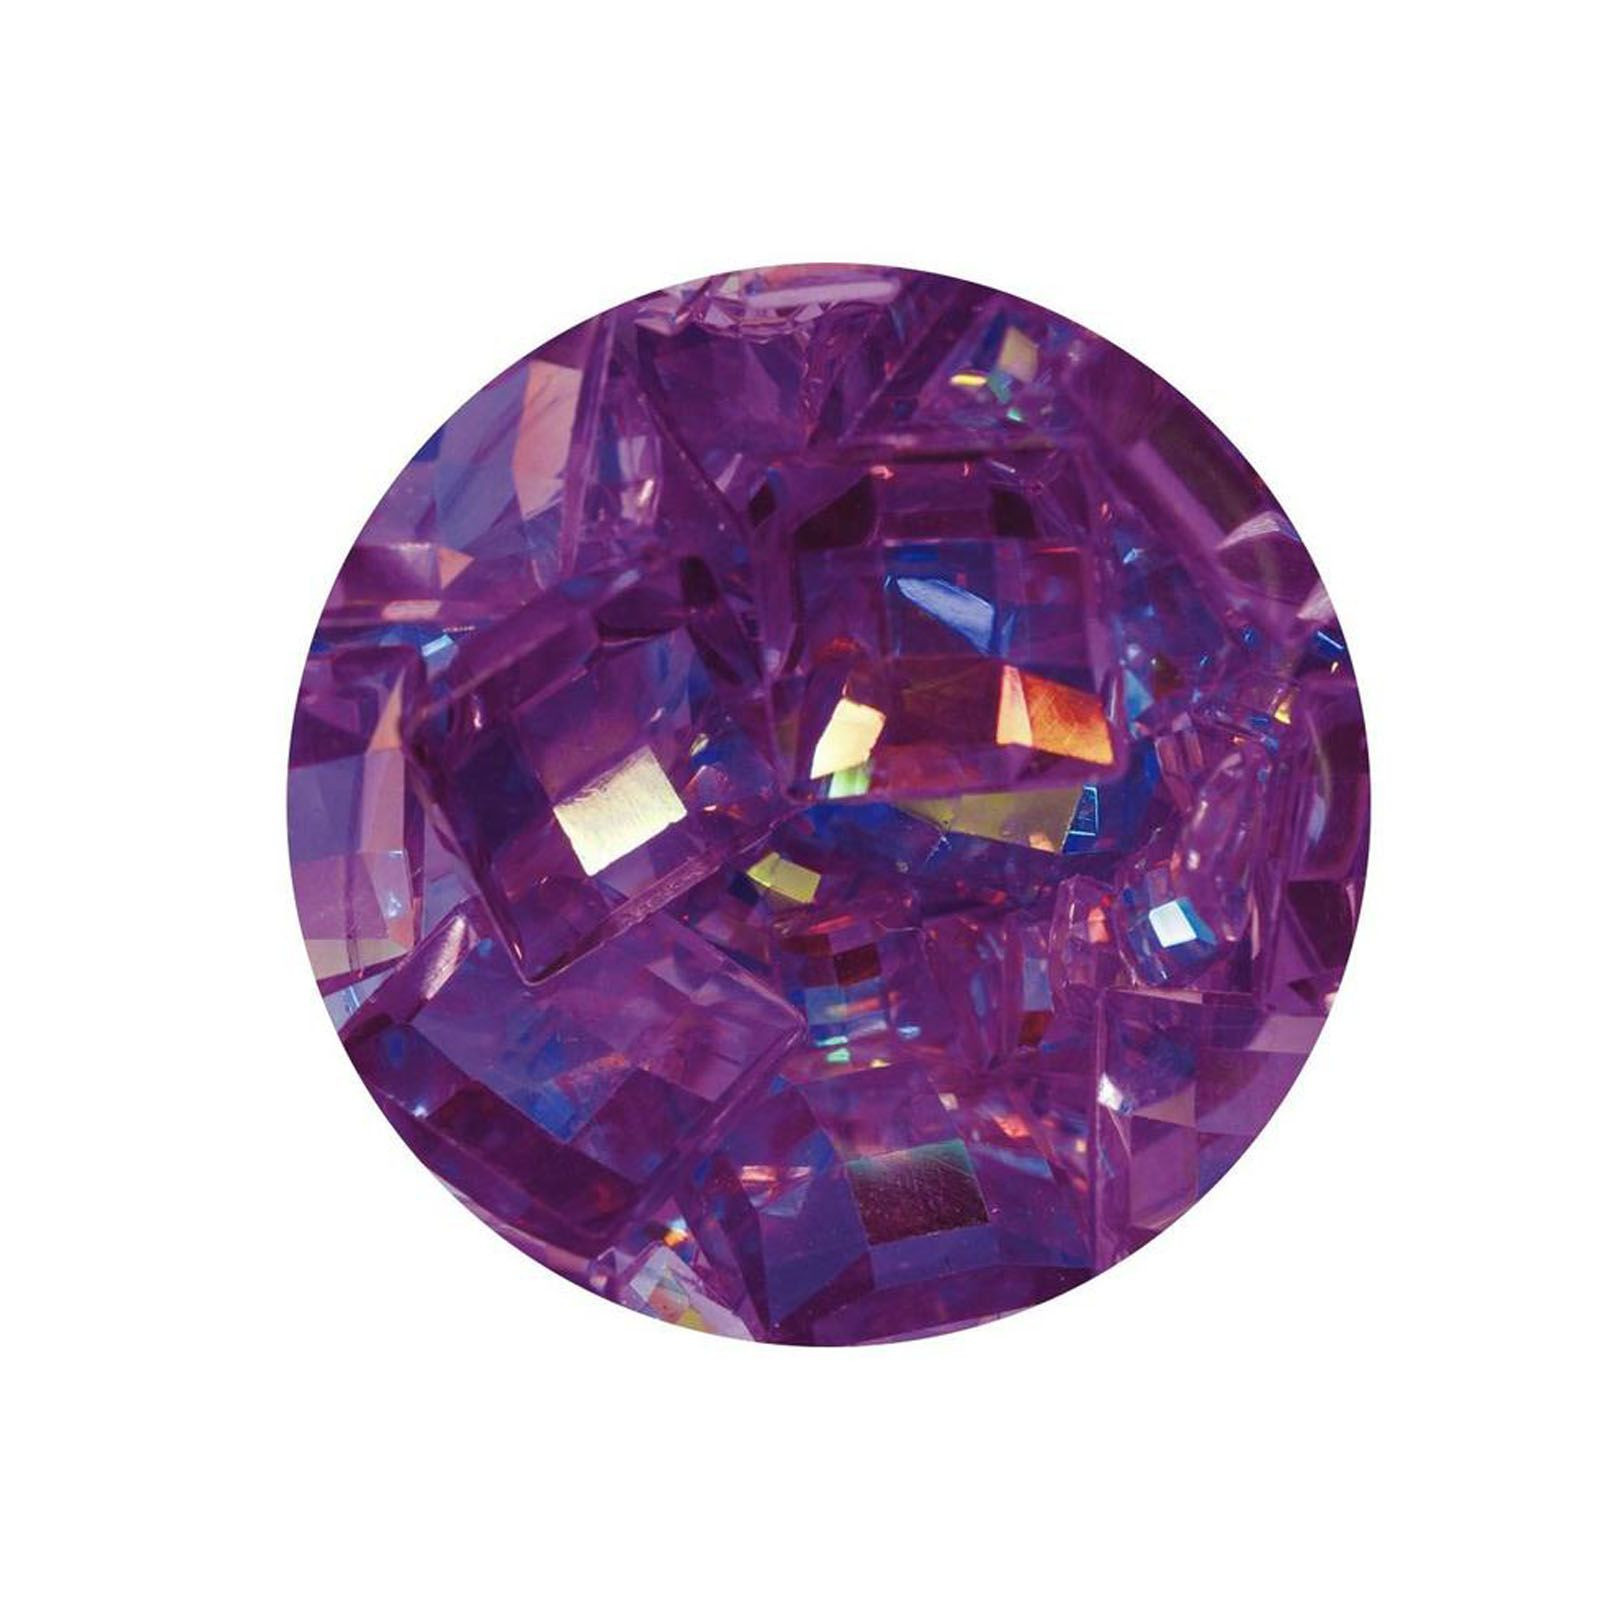 Nuvo gemstones - amethyst purple